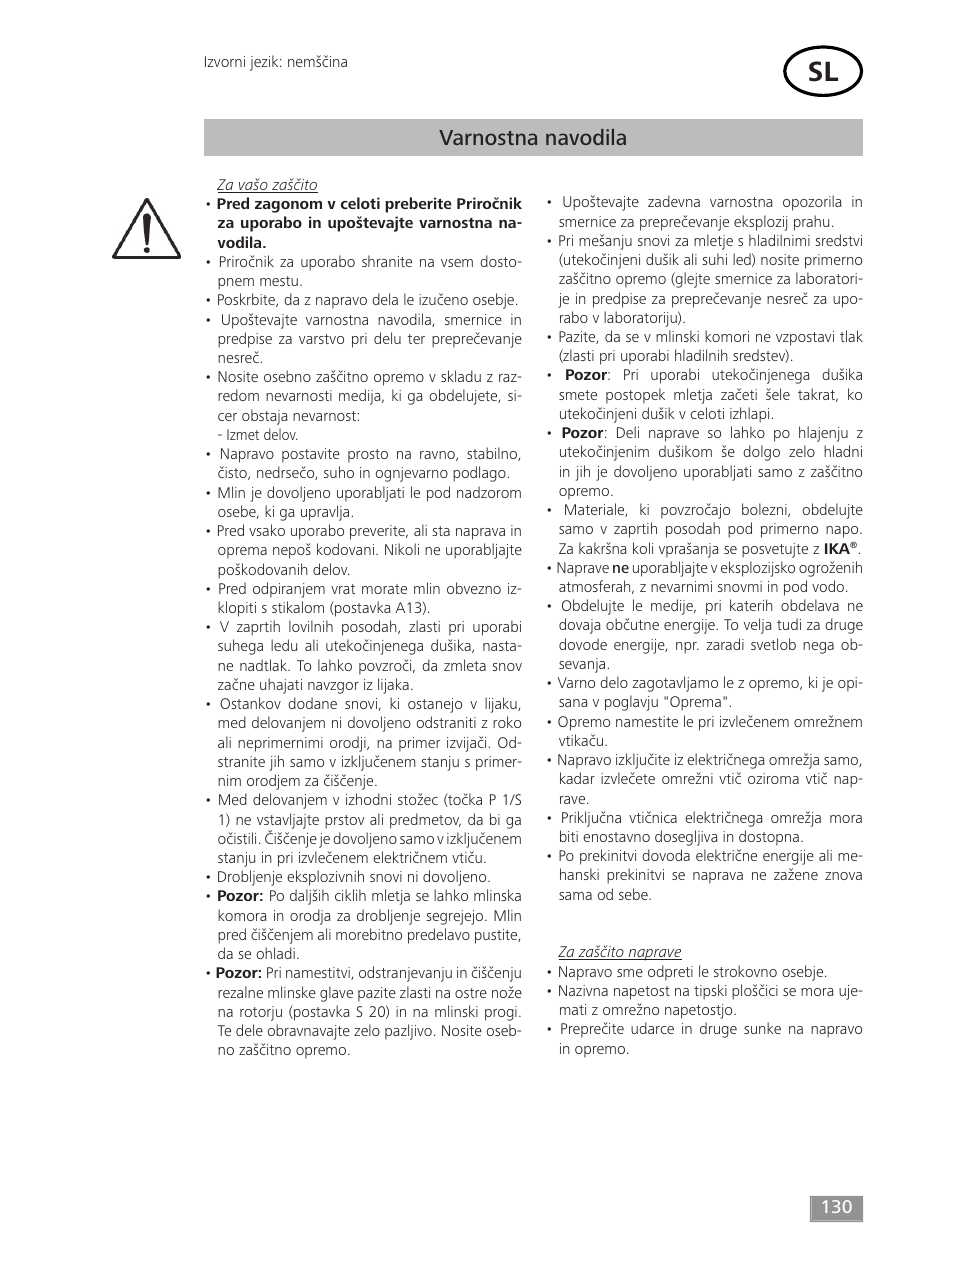 Varnostna navodila | IKA MF 10 basic User Manual | Page 130 / 140